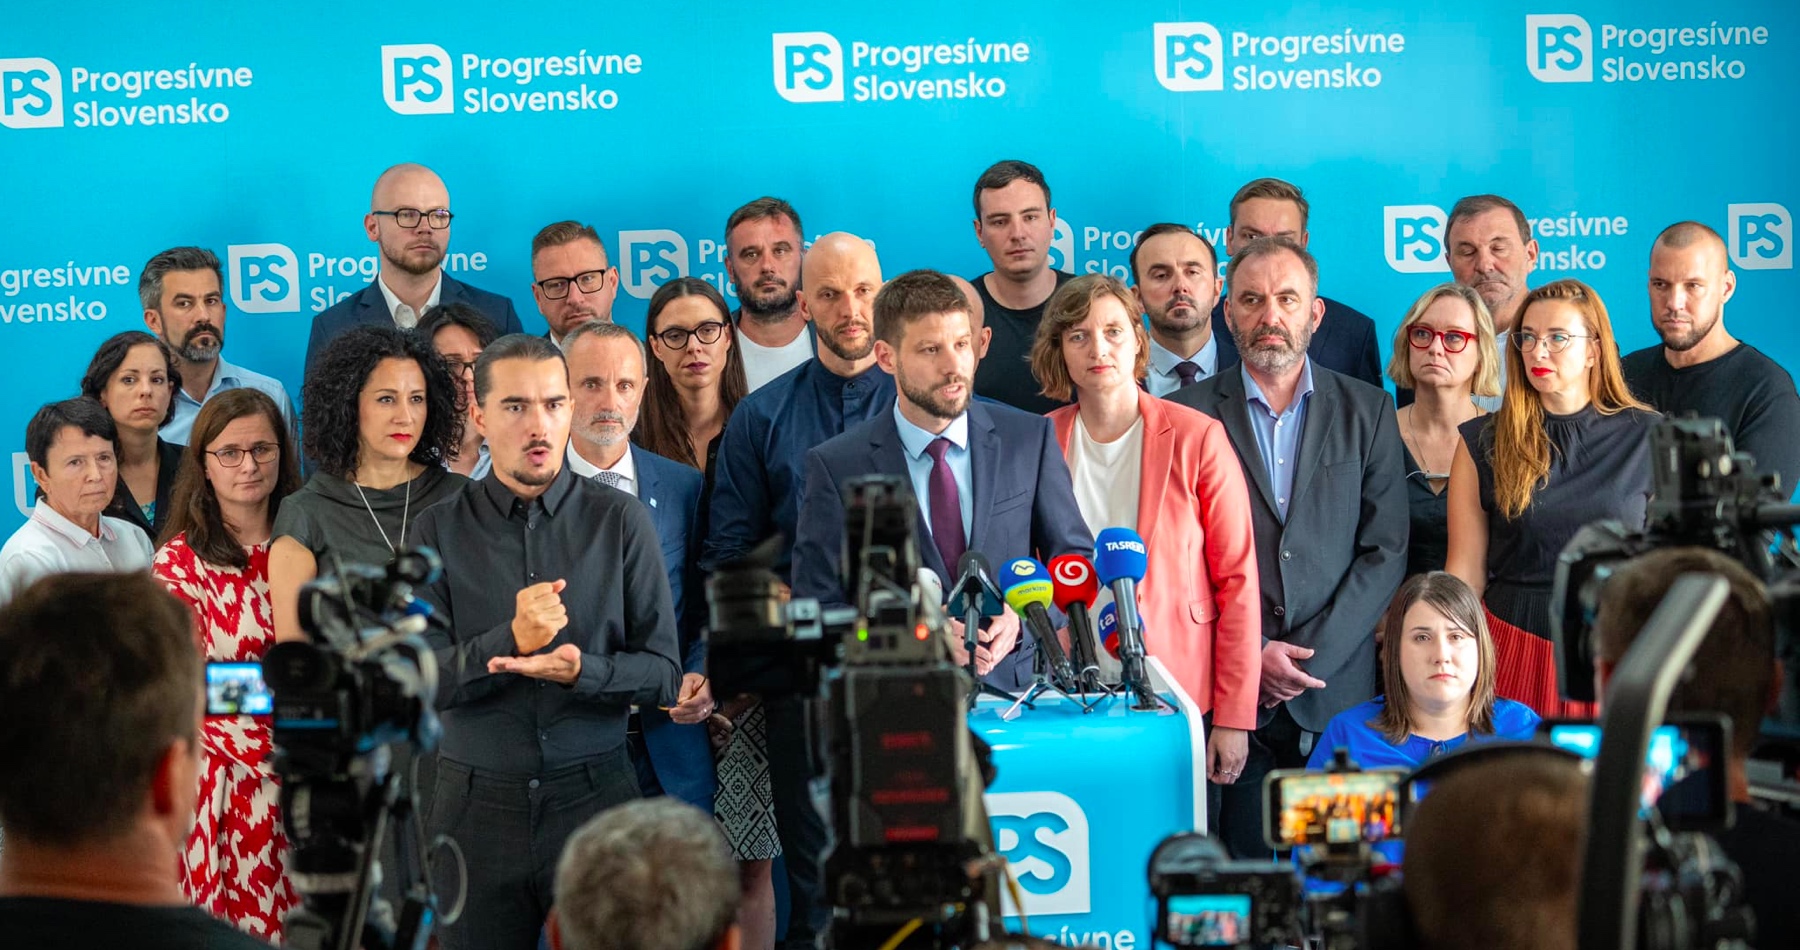 Tajné služby v zlých rukách predstavujú pre Slovensko bezpečnostné riziko, tvrdia progresívci, ktorí usilujú ovládnuť po voľbách všetky spravodajské služby, policajné a bezpečnostné služby